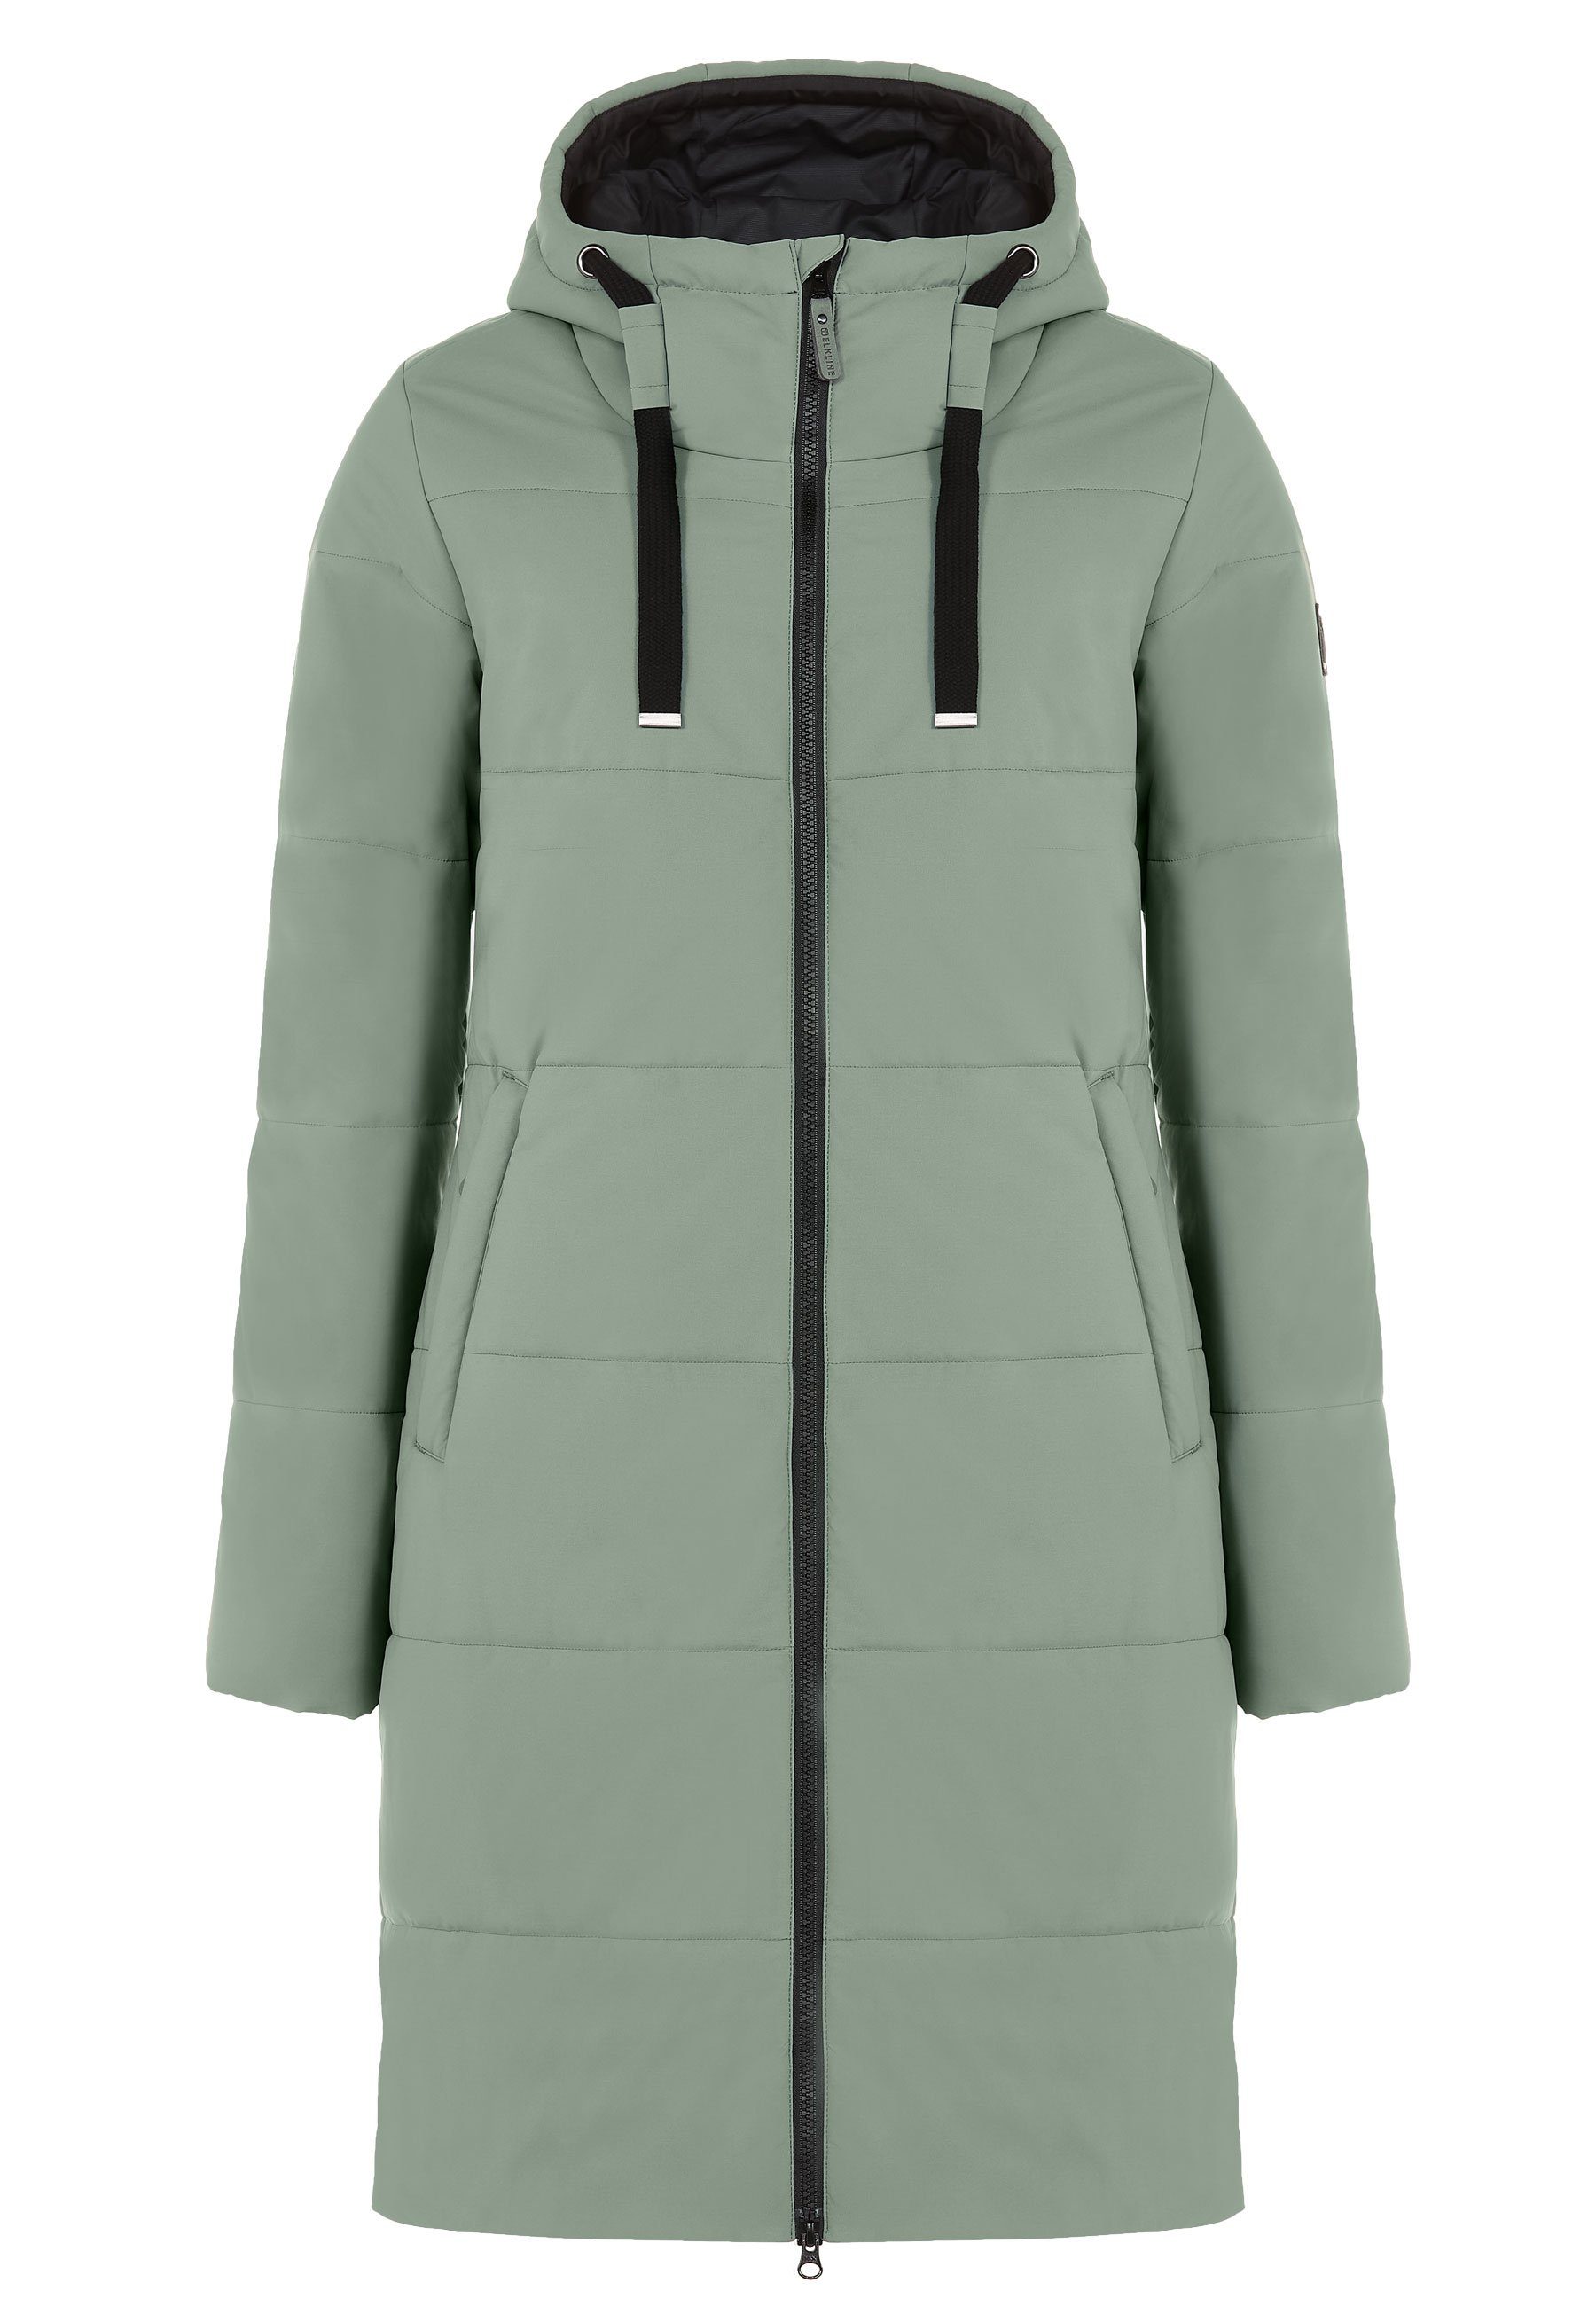 Elkline Winterjacke Comfort leichter olive langer Mantel, soft 2-Wege-Reißverschluss